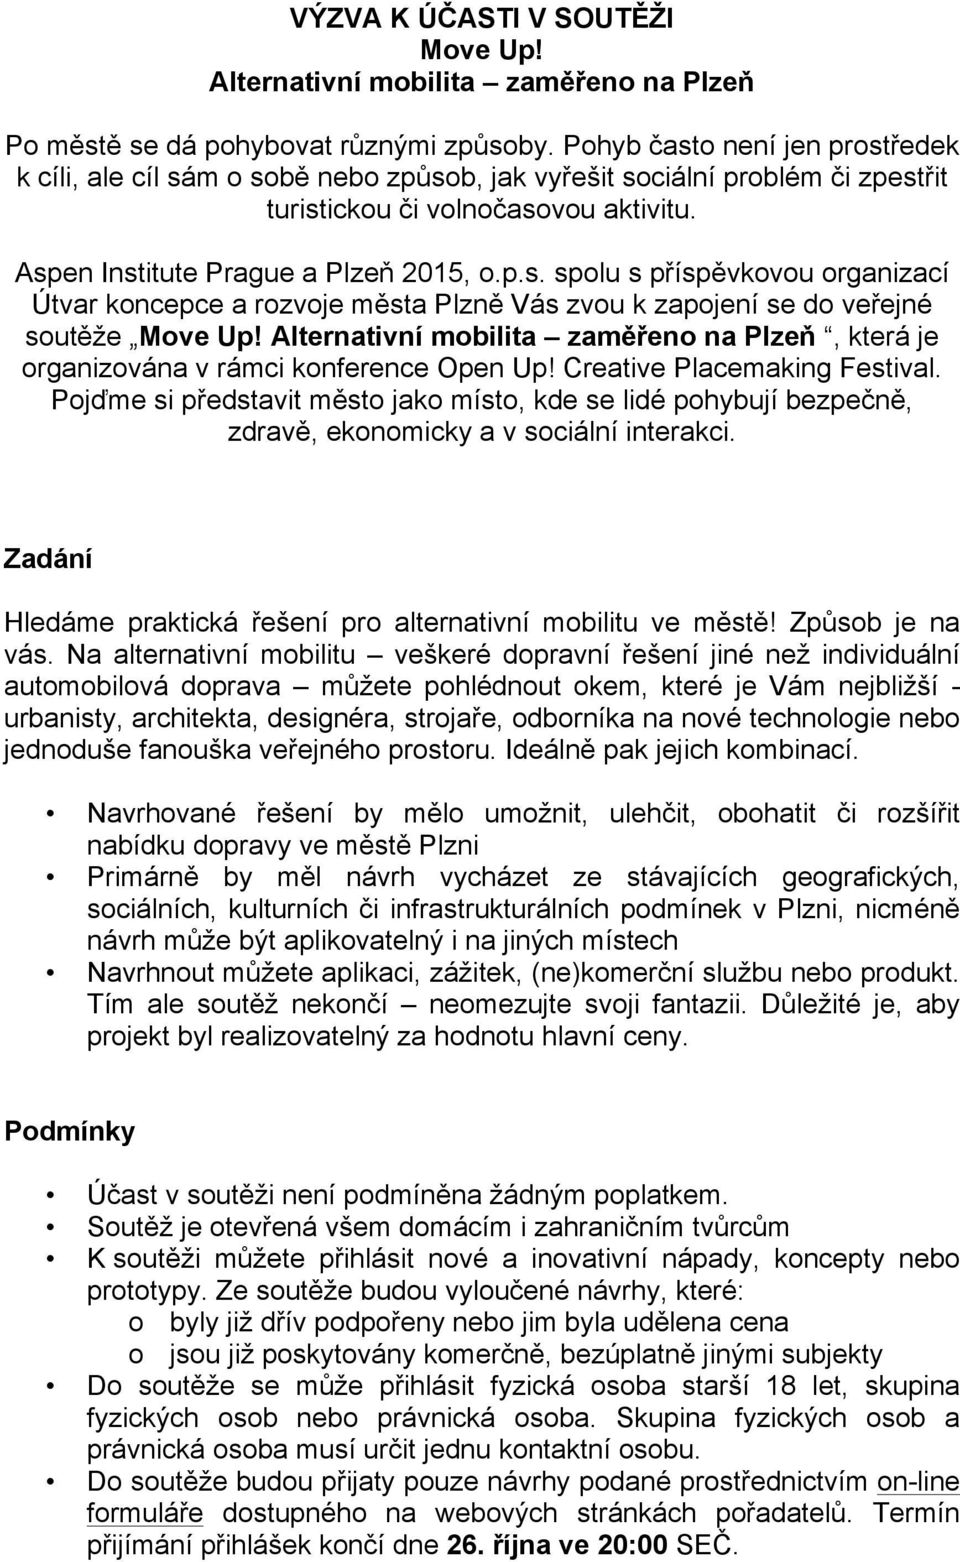 Alternativní mobilita zaměřeno na Plzeň, která je organizována v rámci konference Open Up! Creative Placemaking Festival.